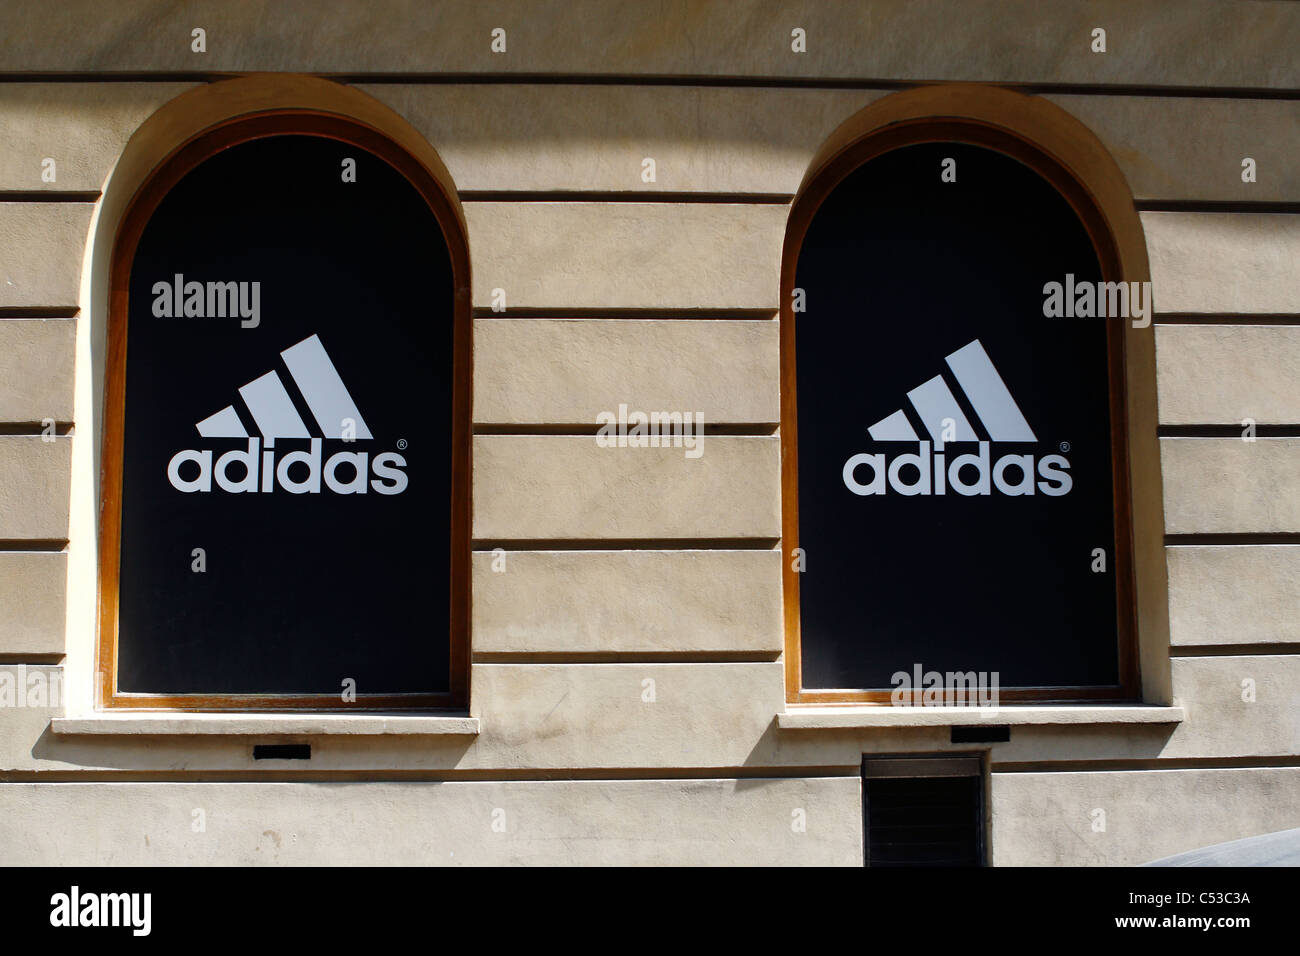 Adidas speichern, großes Logo auf Schaufenster, Krakau, Polen. Stockfoto